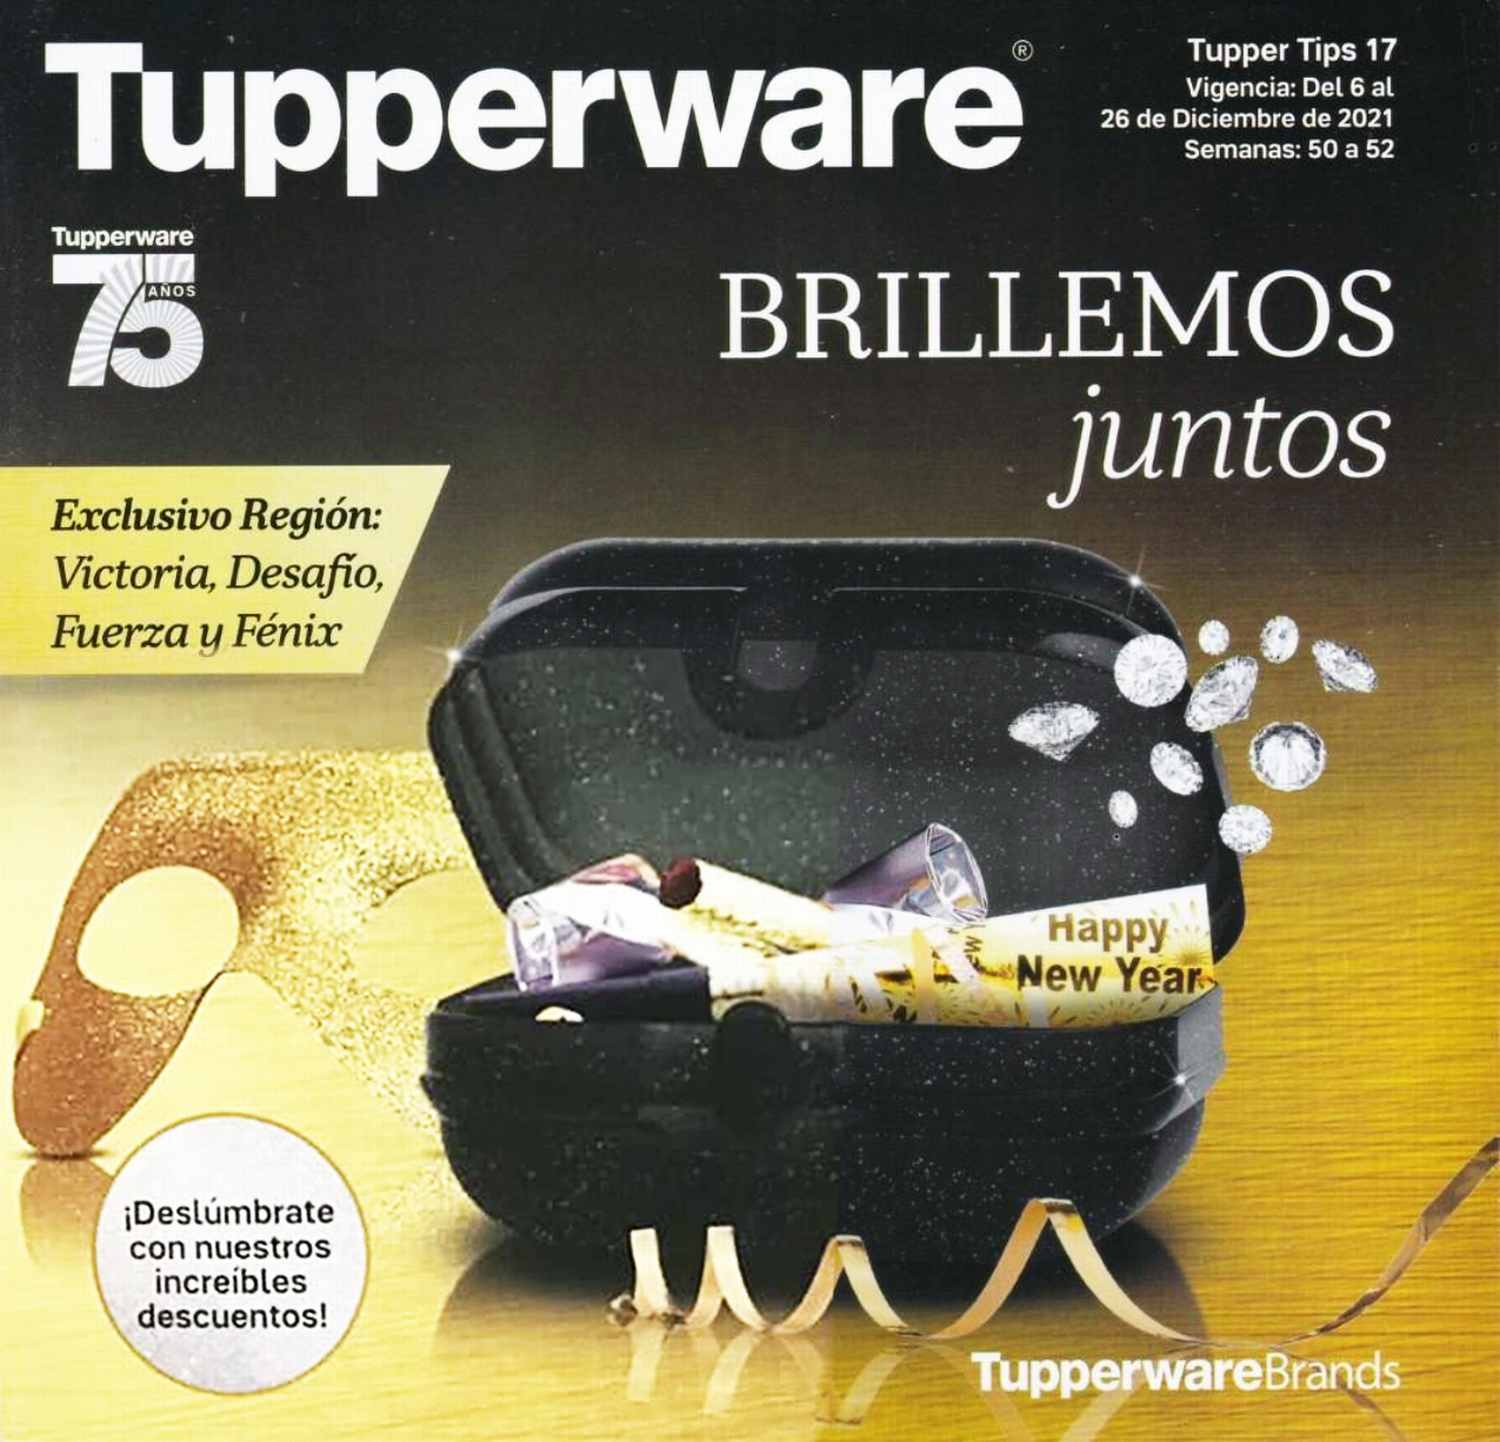 Catálogo Tupperware Tupper Tips 17 2021 México